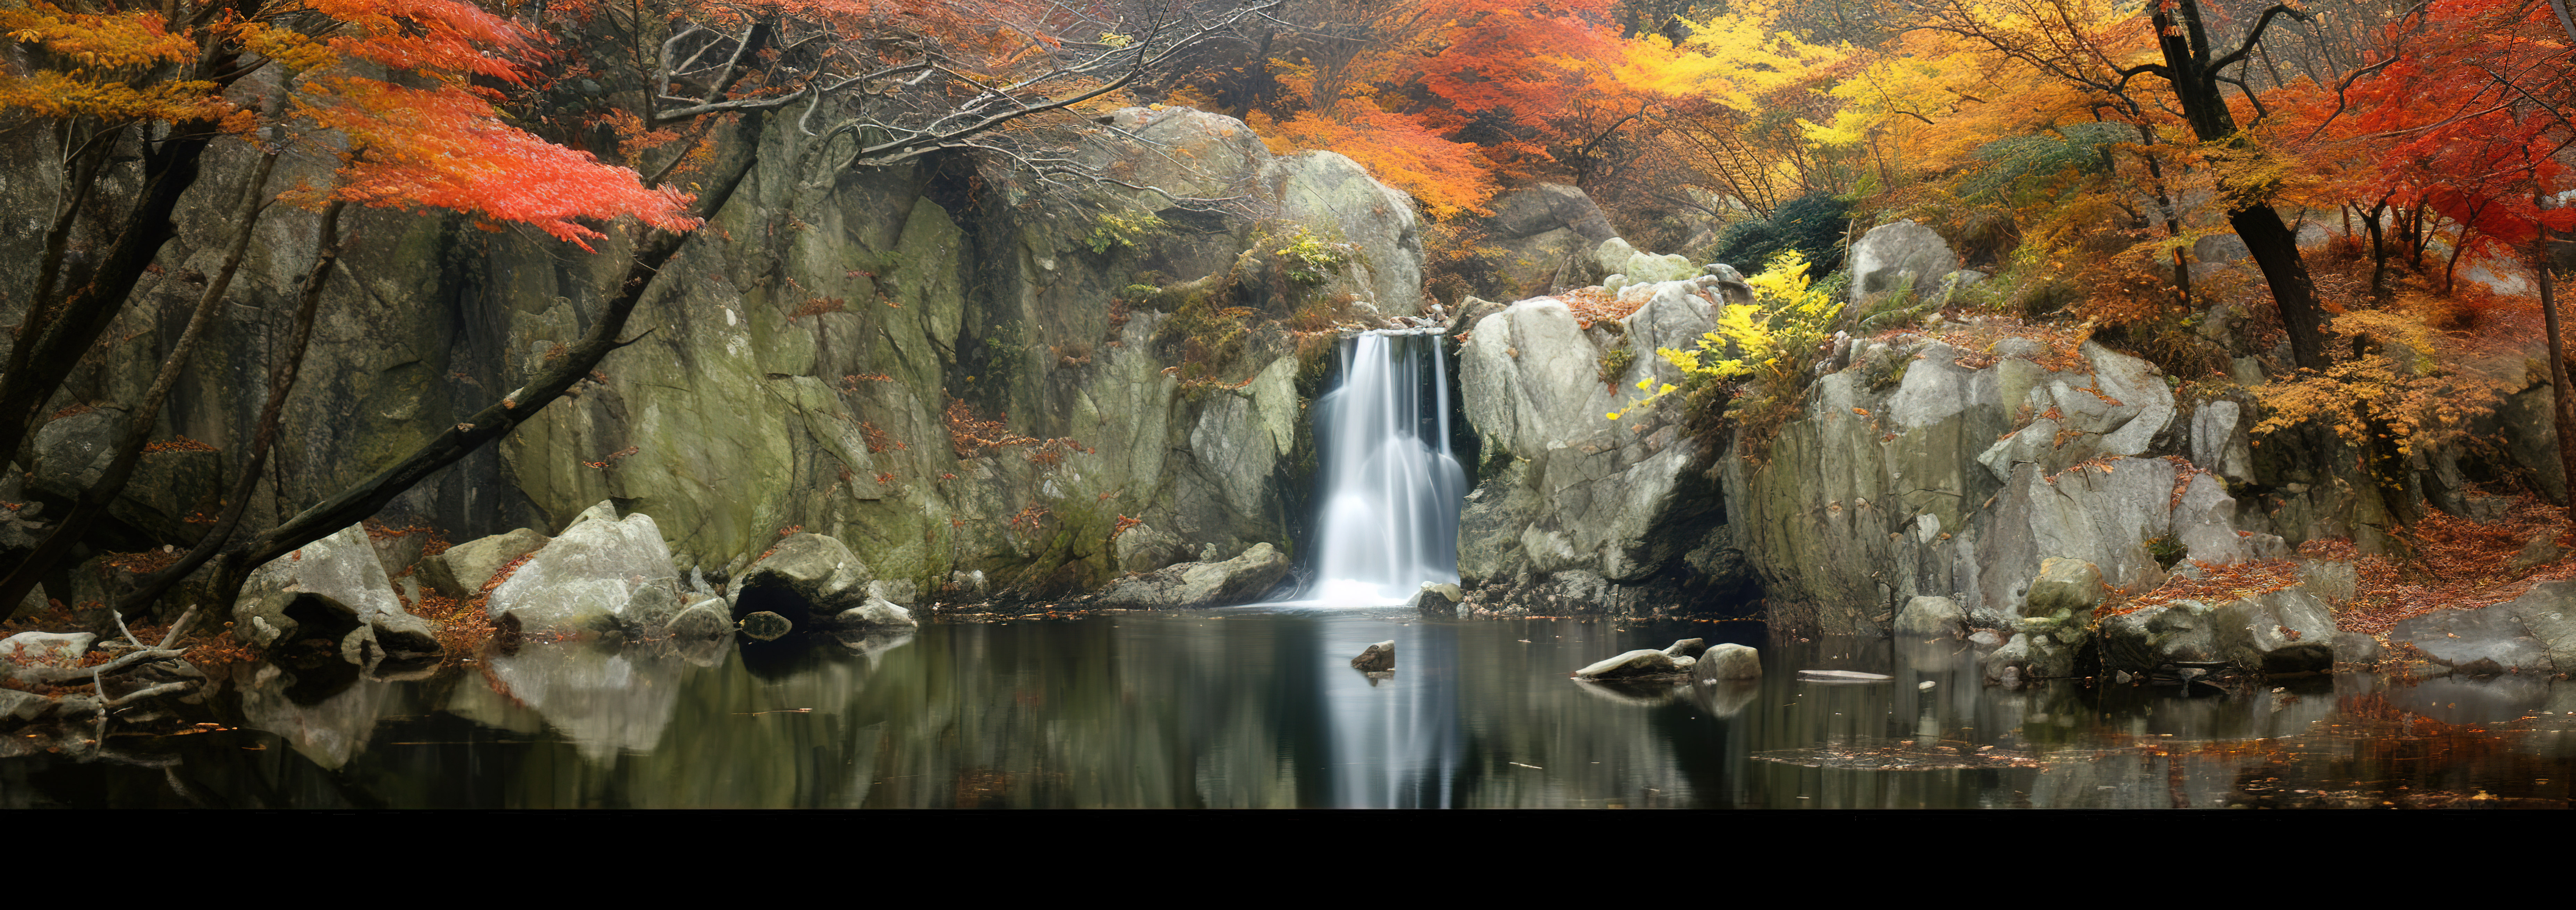 秋天森林里的瀑布图片